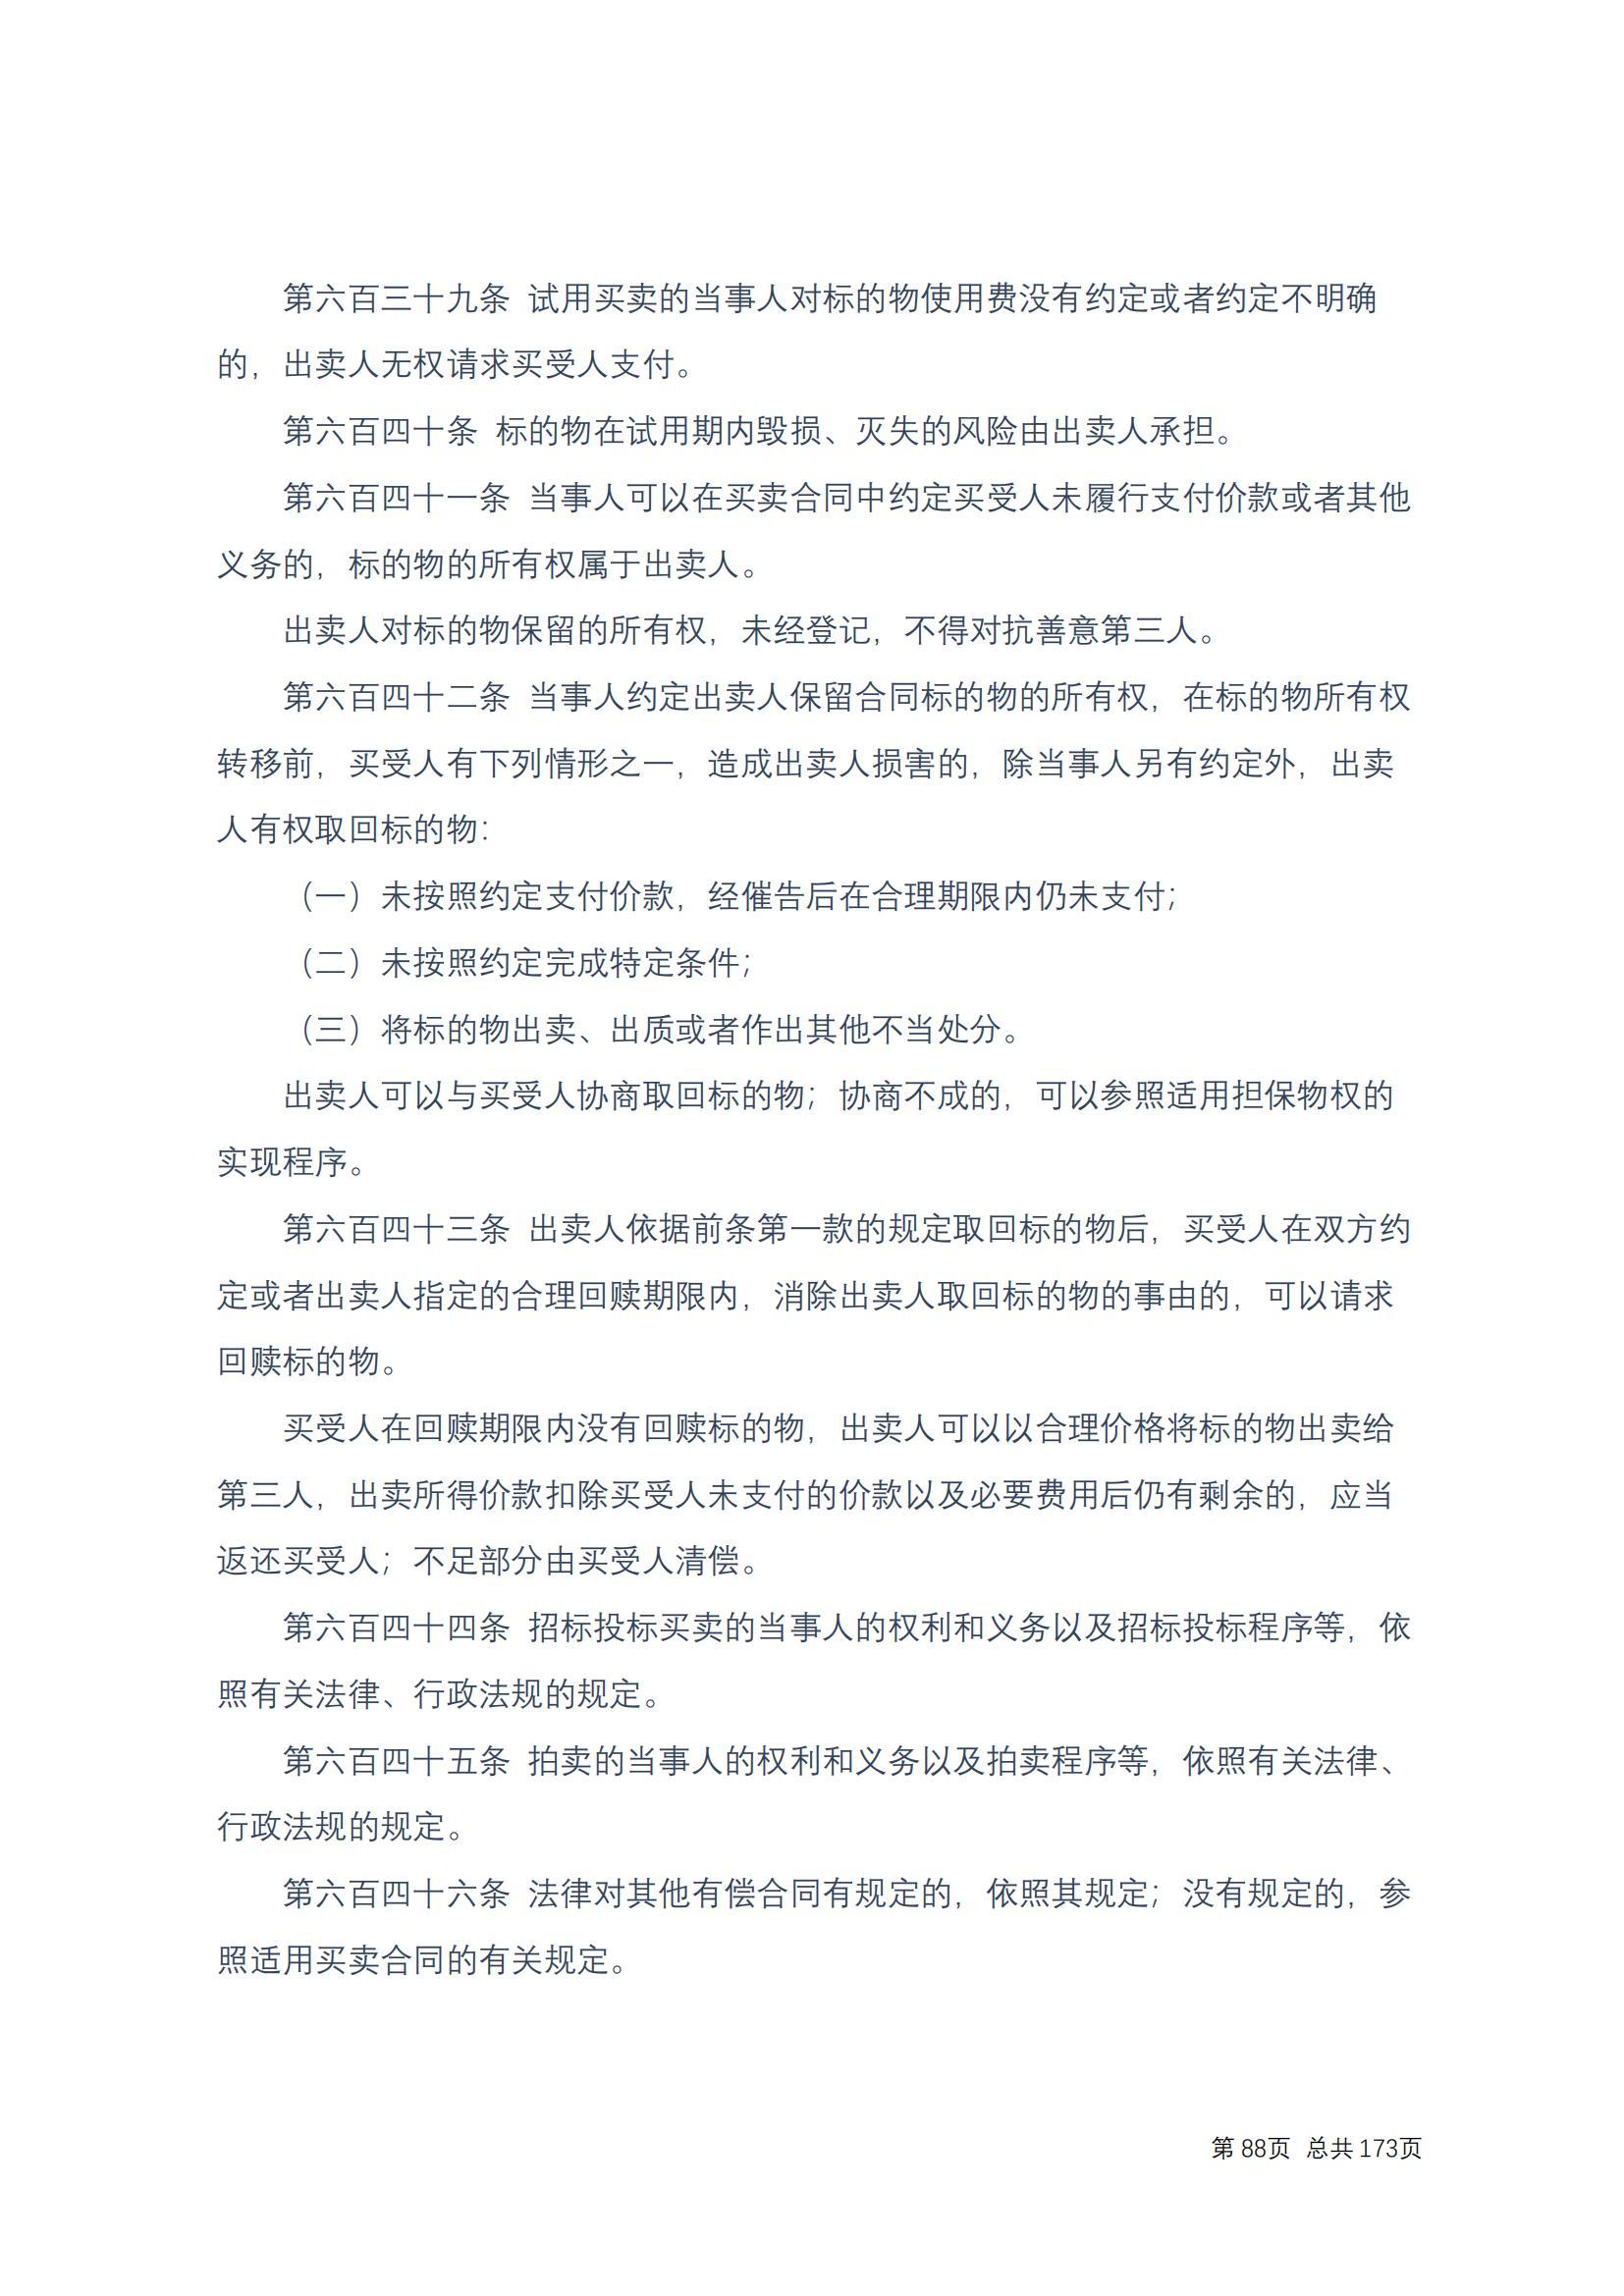 中华人民共和国民法典 修改过_87